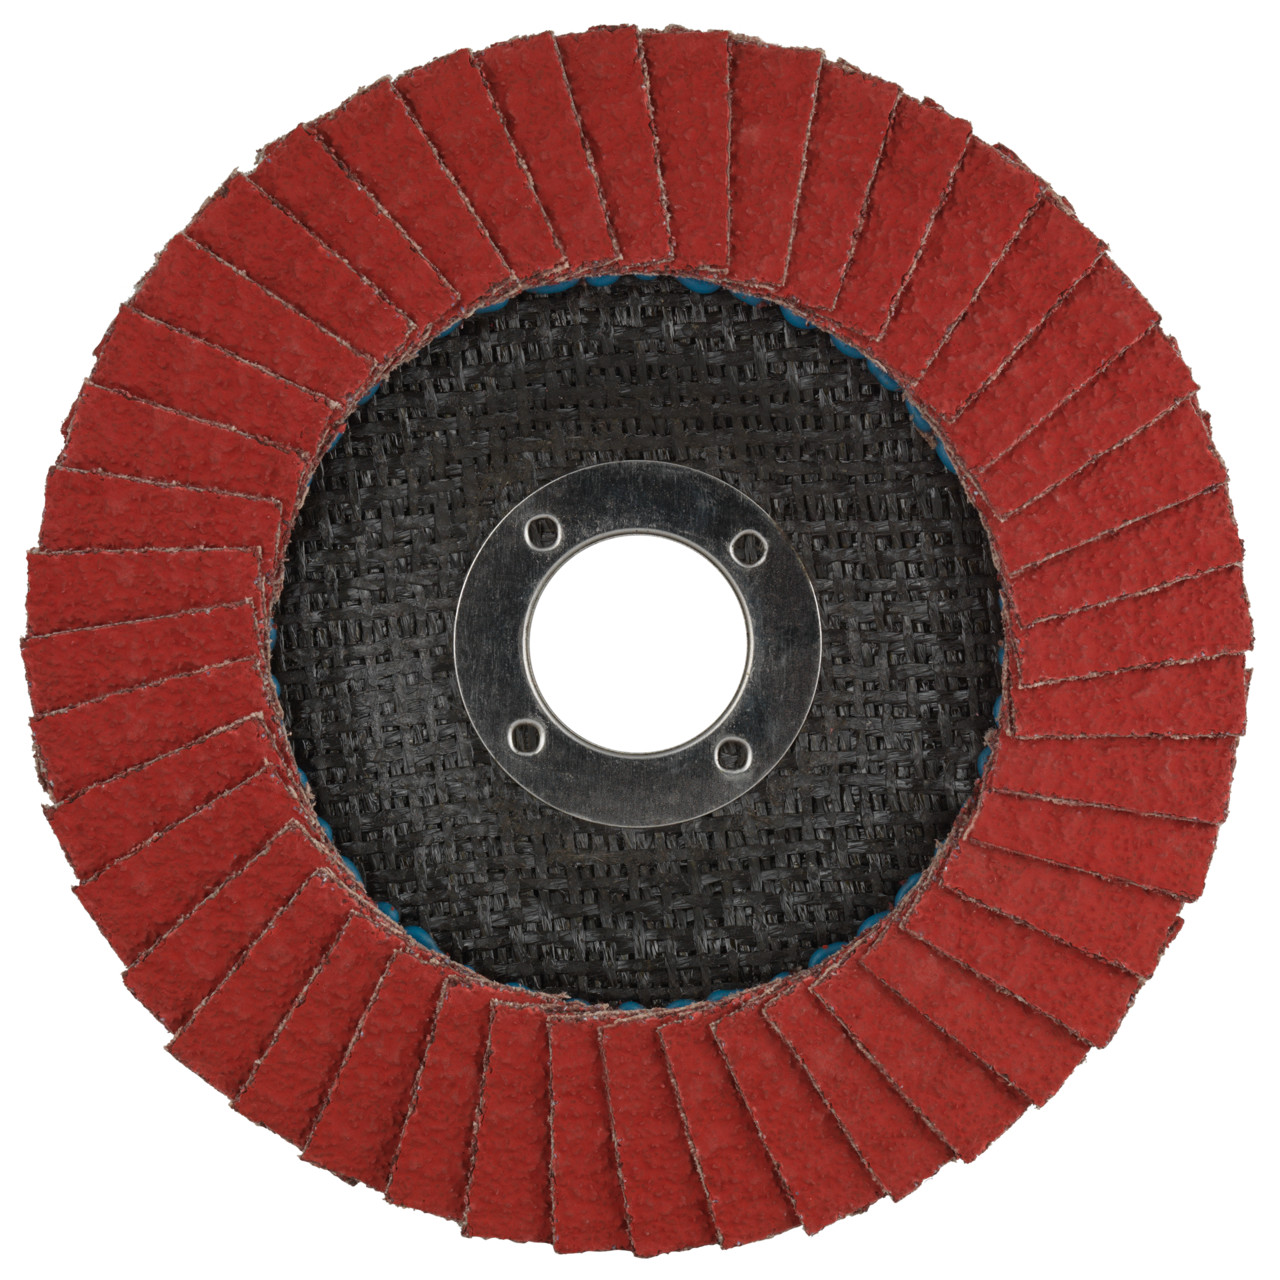 Tyrolit Getande borgring DxH 125x22,2 CERAMIC voor roestvrij staal, P40, vorm: 27A - slingerontwerp (glasvezeldragerhuisontwerp), Art. 645135